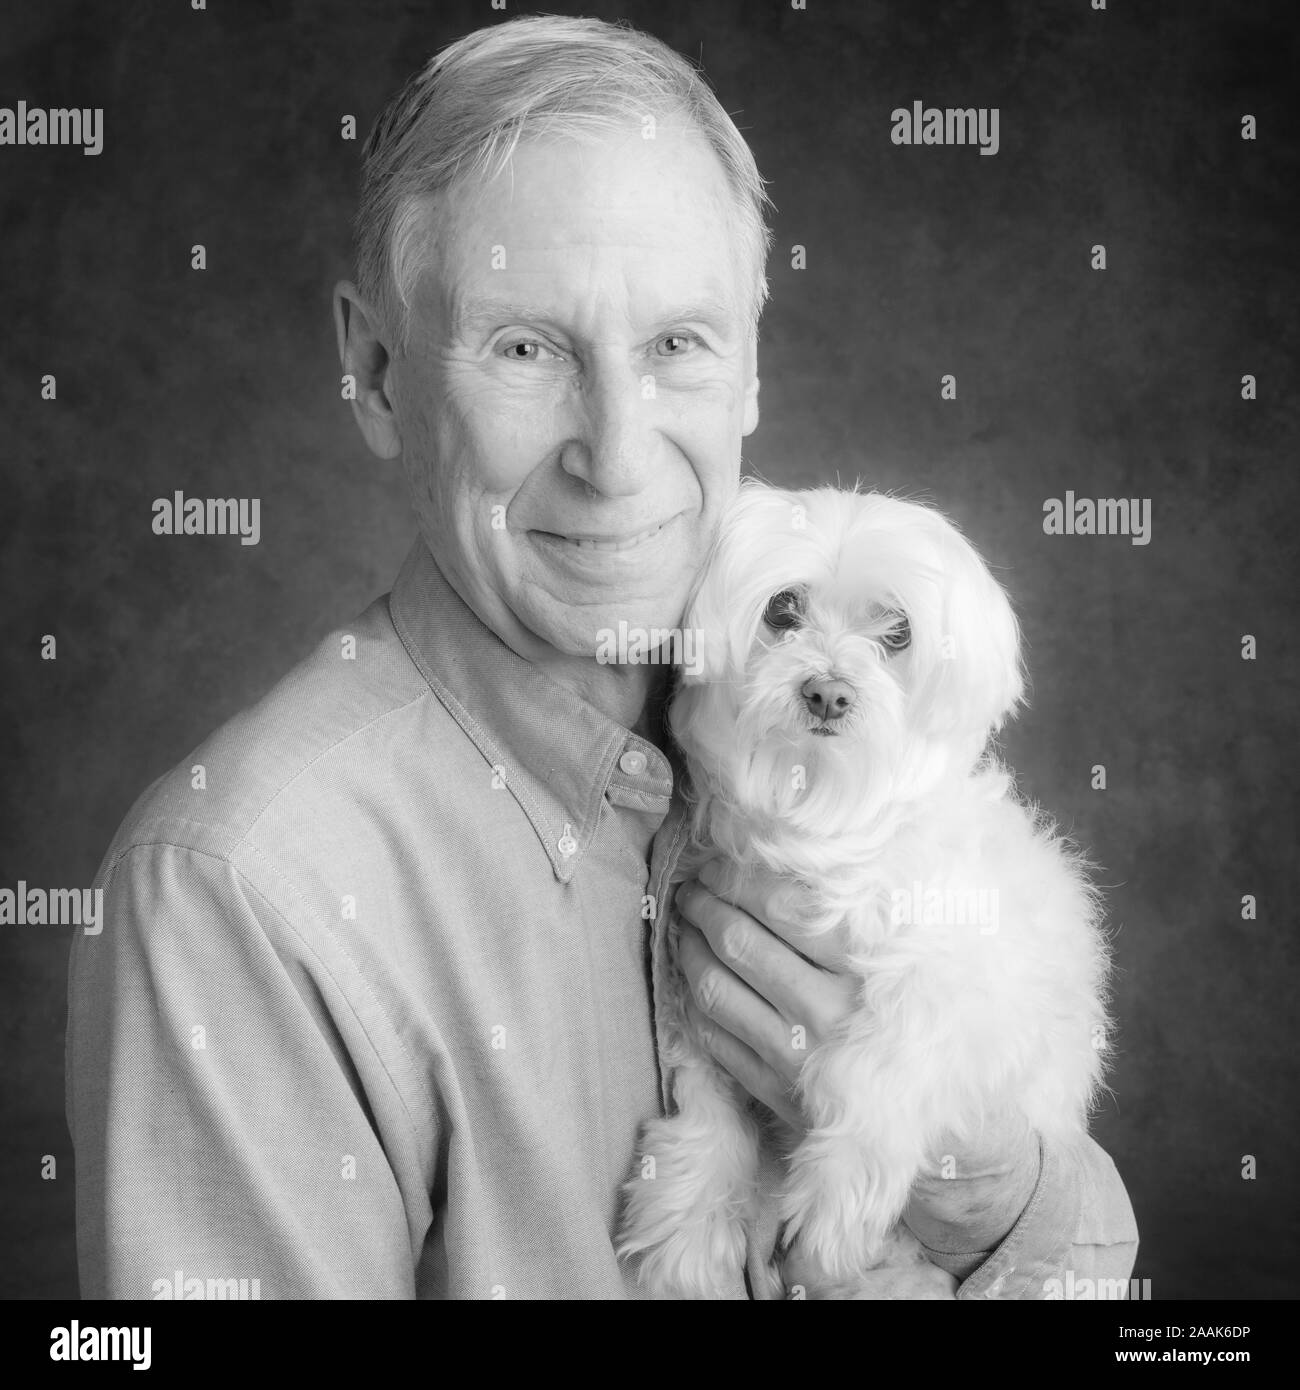 Portrait of senior man holding Maltese Dog Banque D'Images